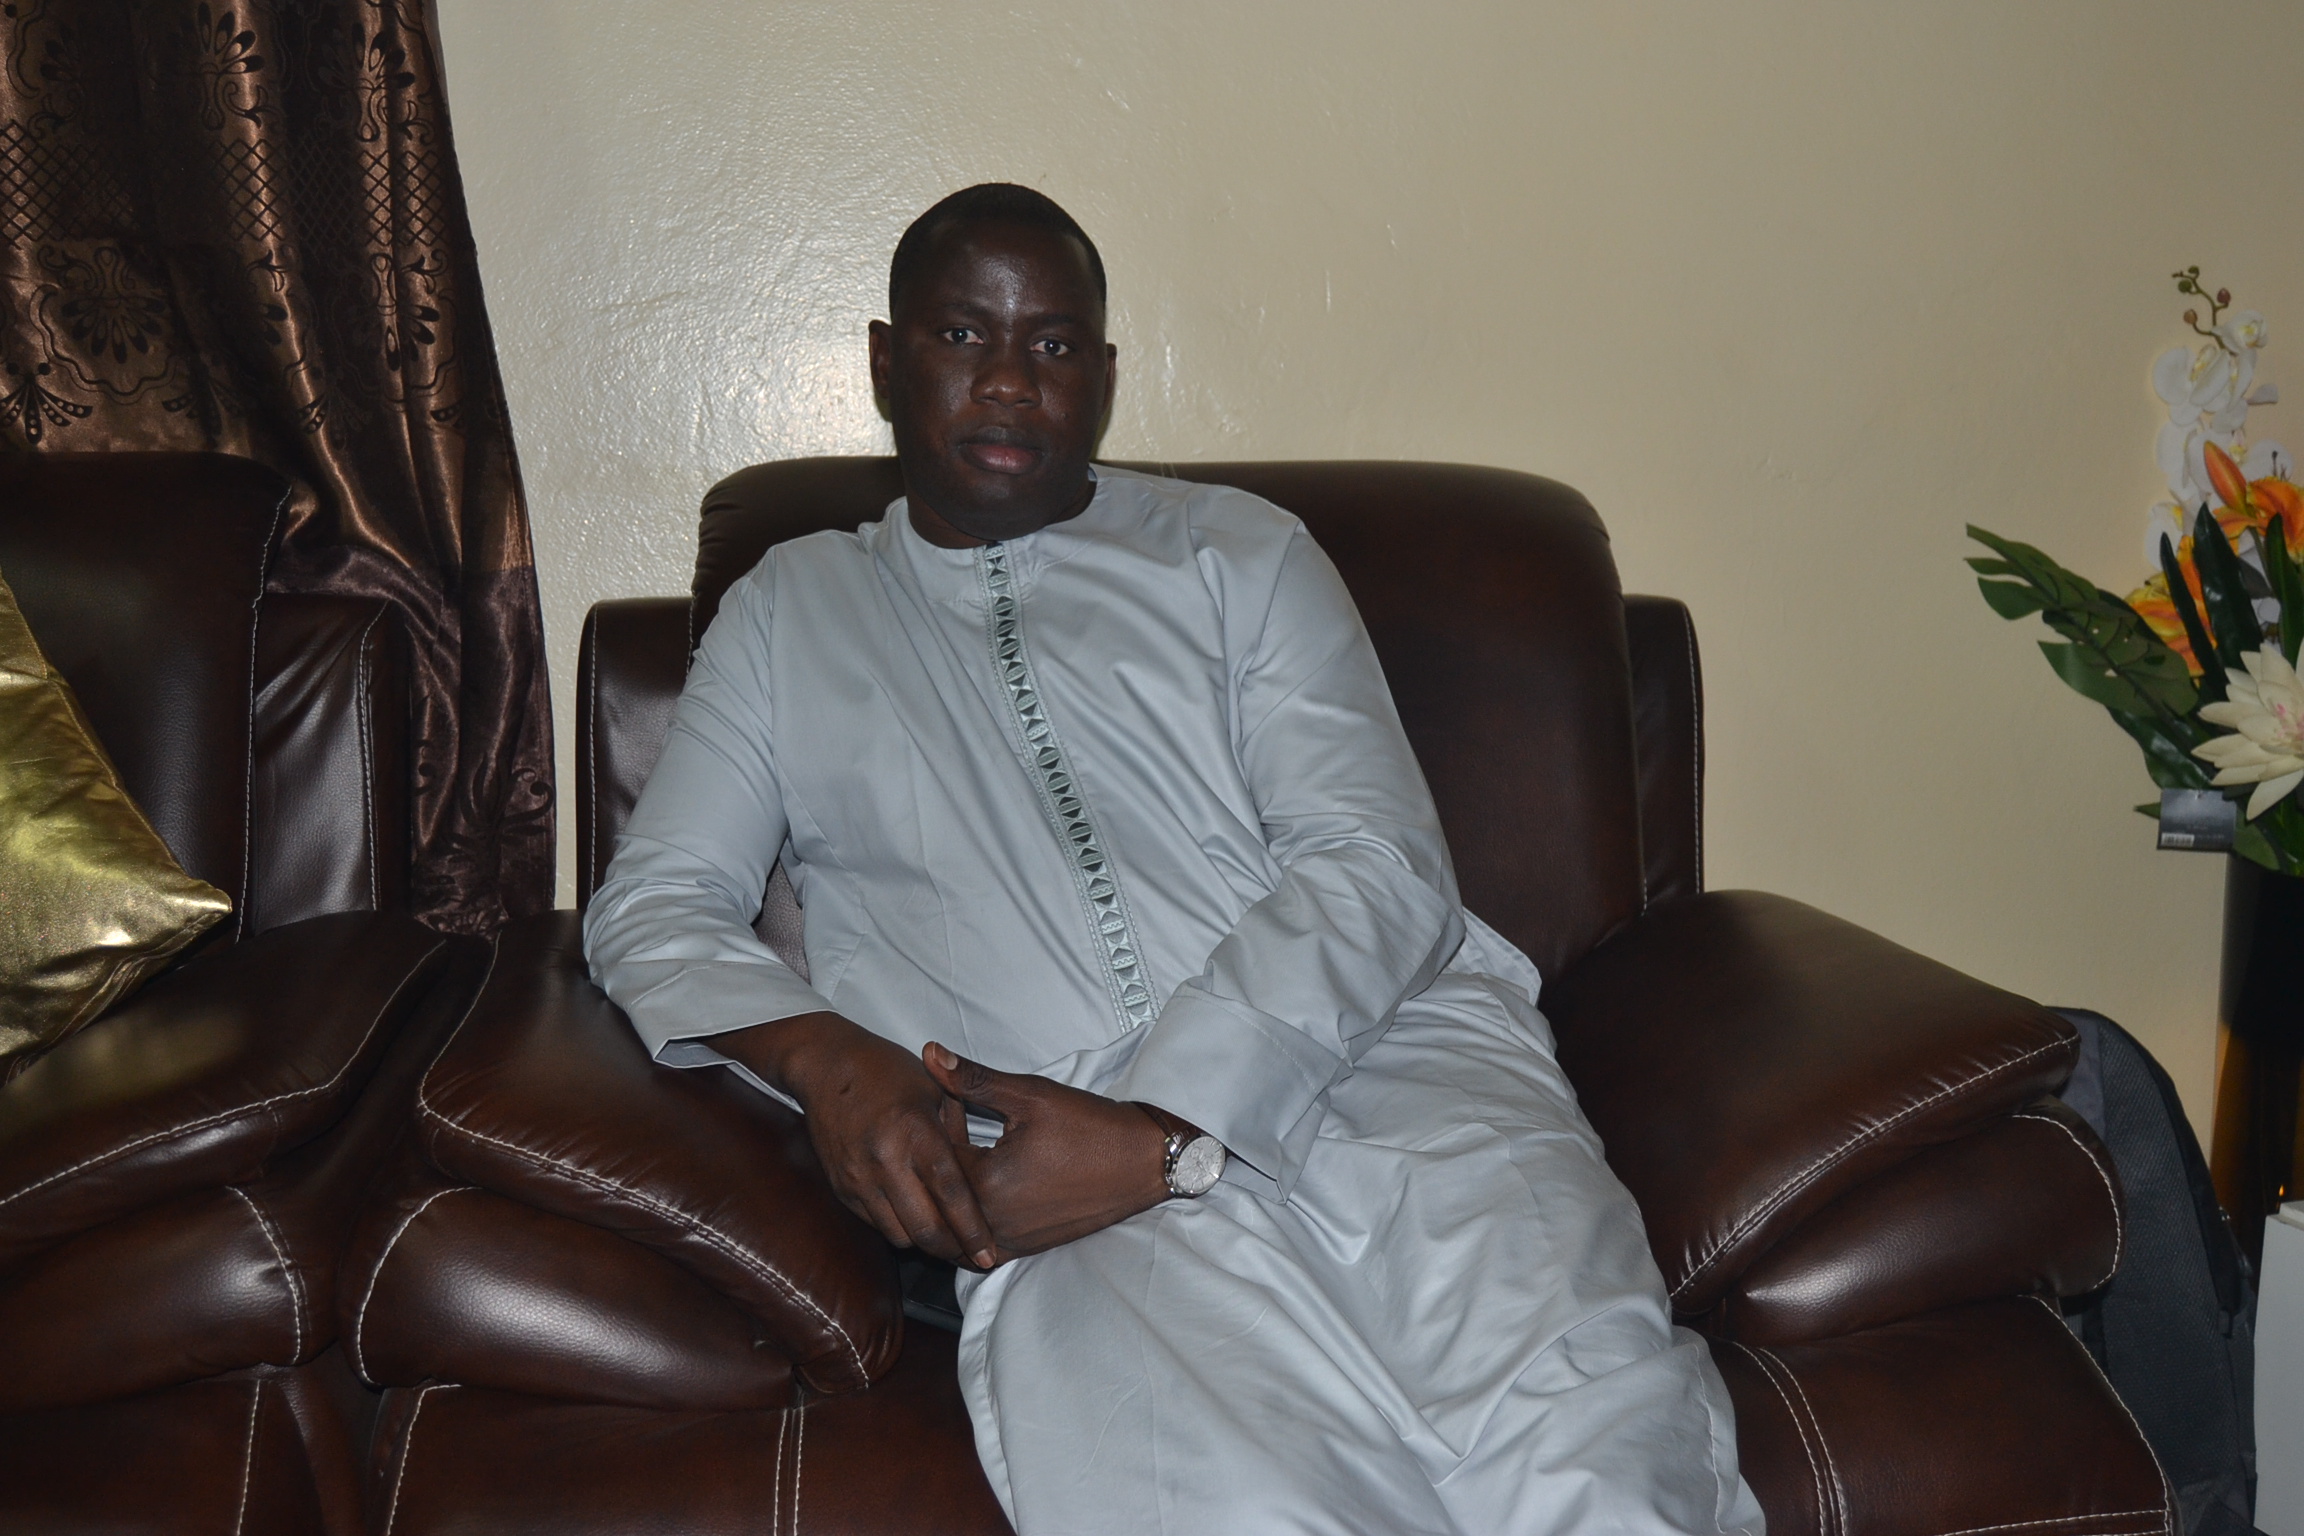 VIDEO: Journée Serigne Kosso Mbacké, son fils Serigne Abdourahmane s'exprime sur la date du 12 juin et appelle le Chef de l'Etat Macky Sall...